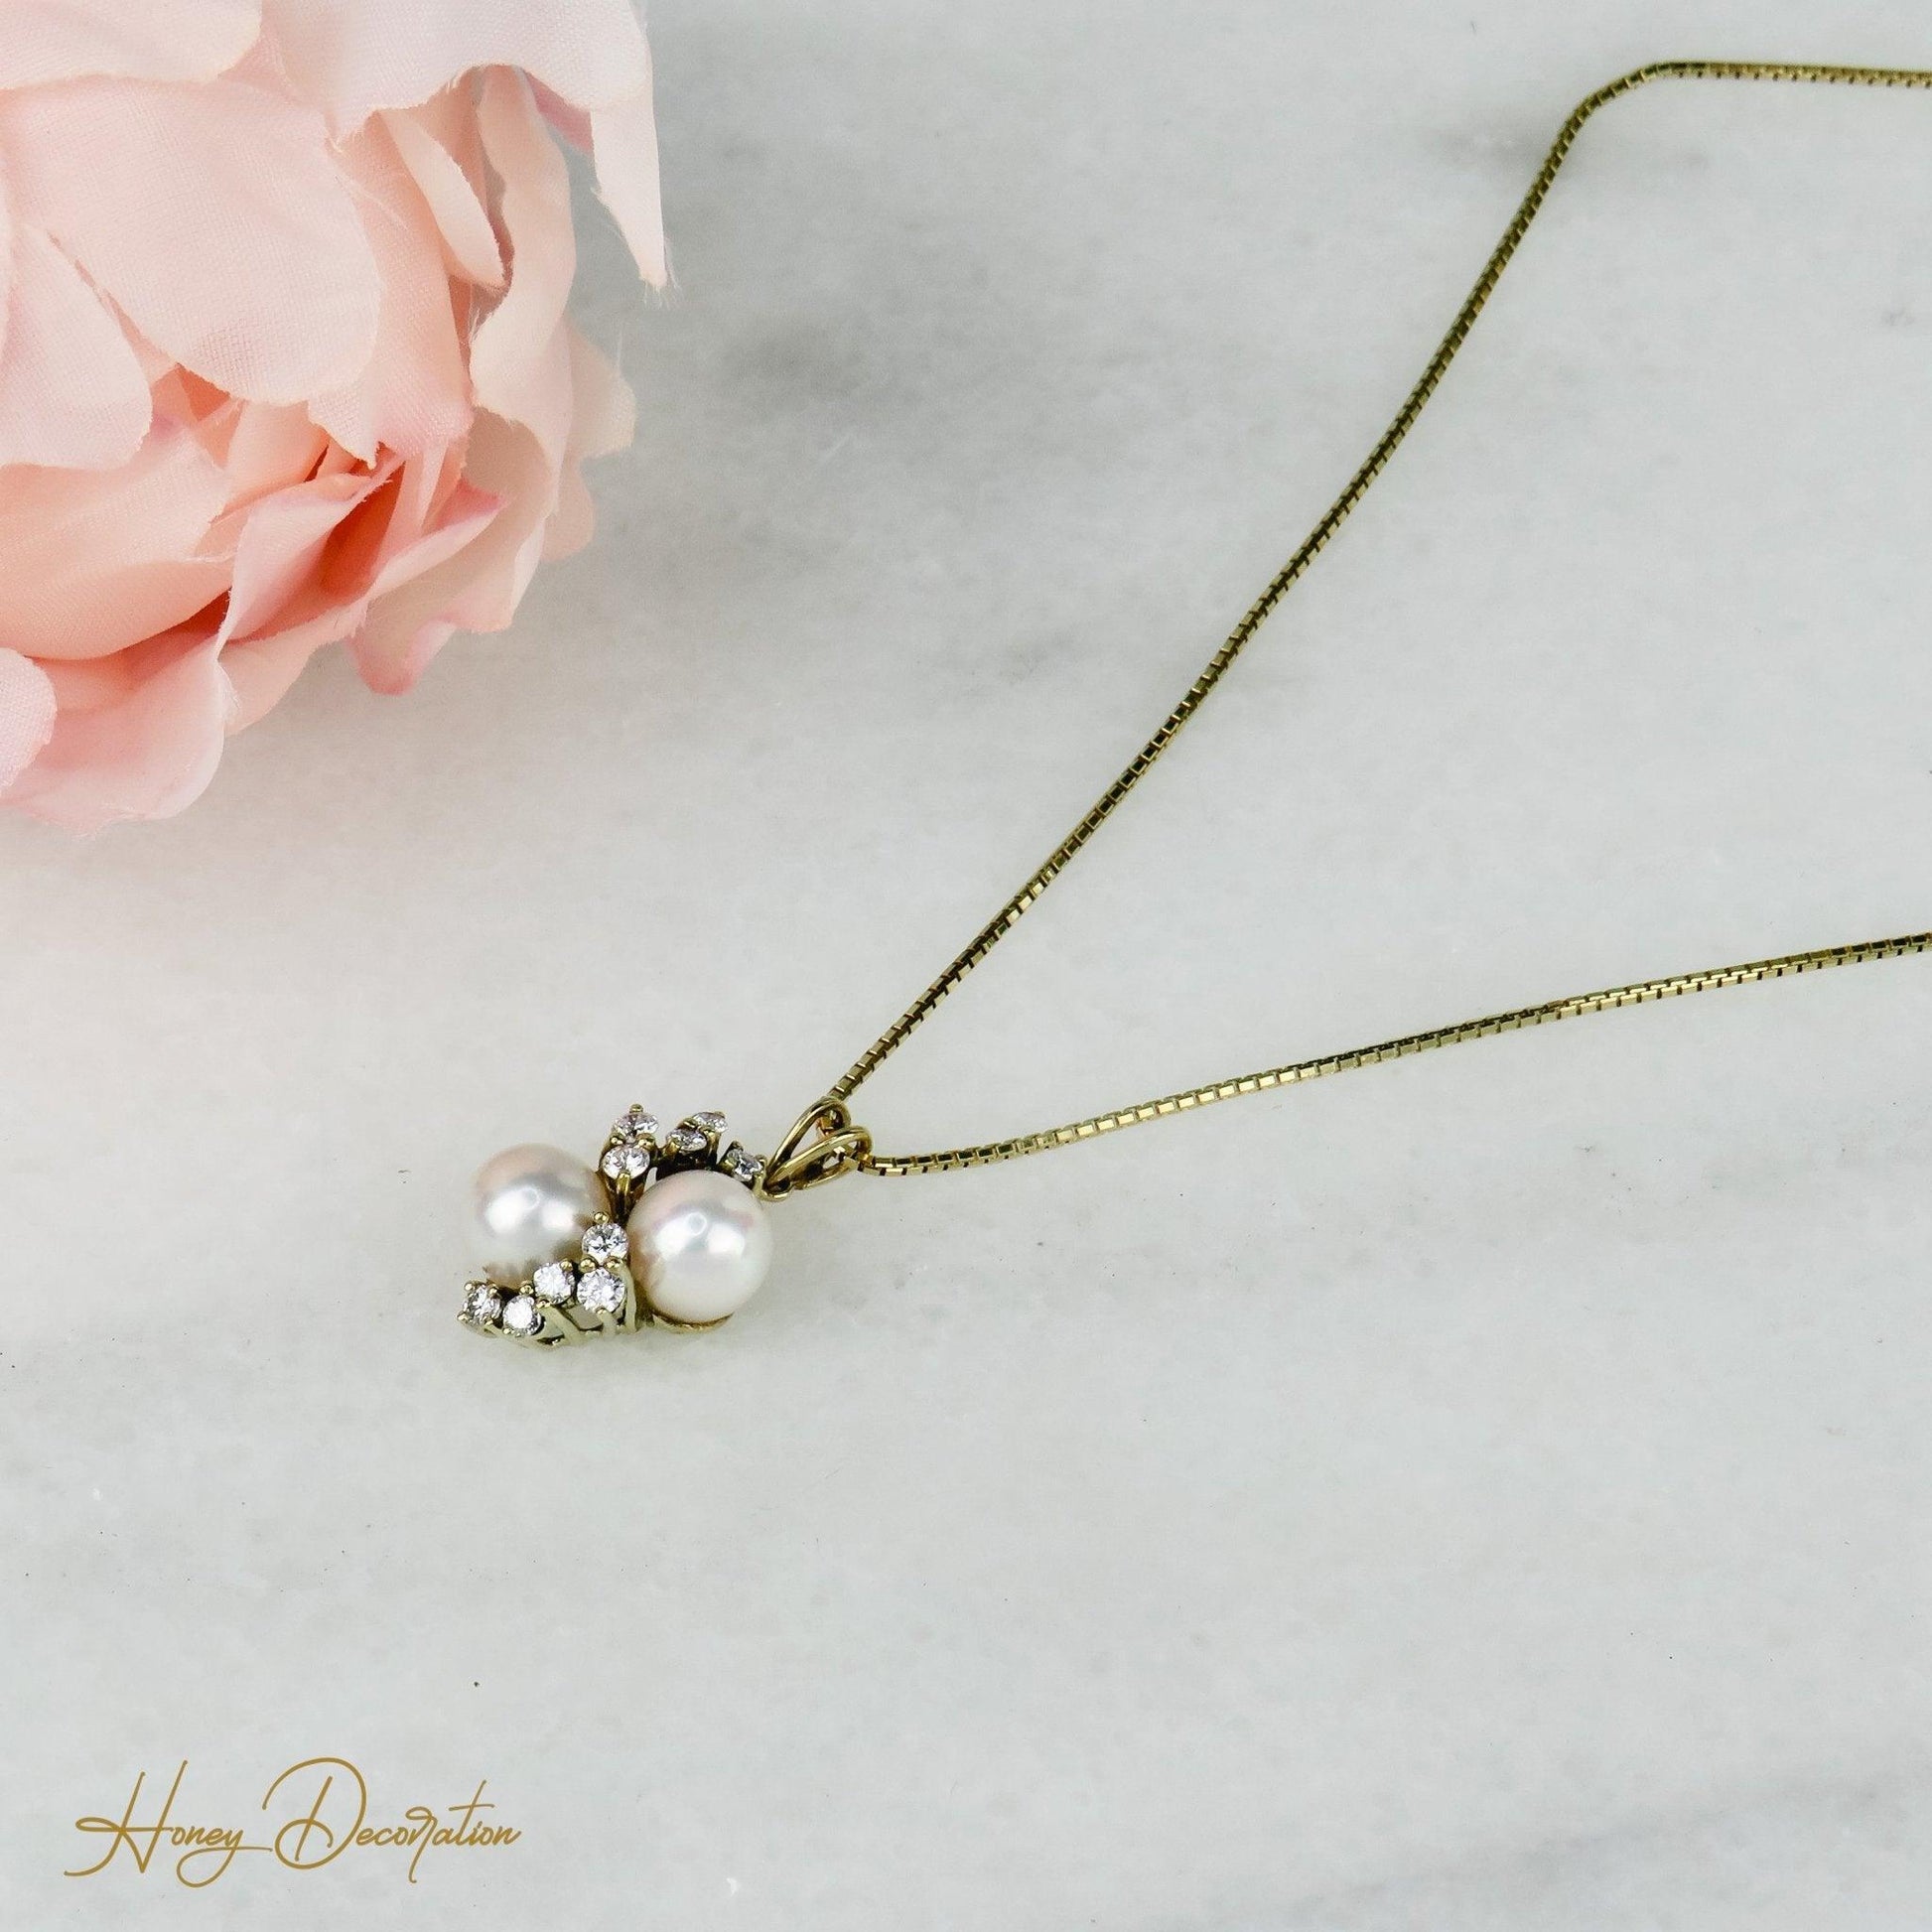 Halsketten-Anhänger mit Perlen und Brillanten - Honey Decoration